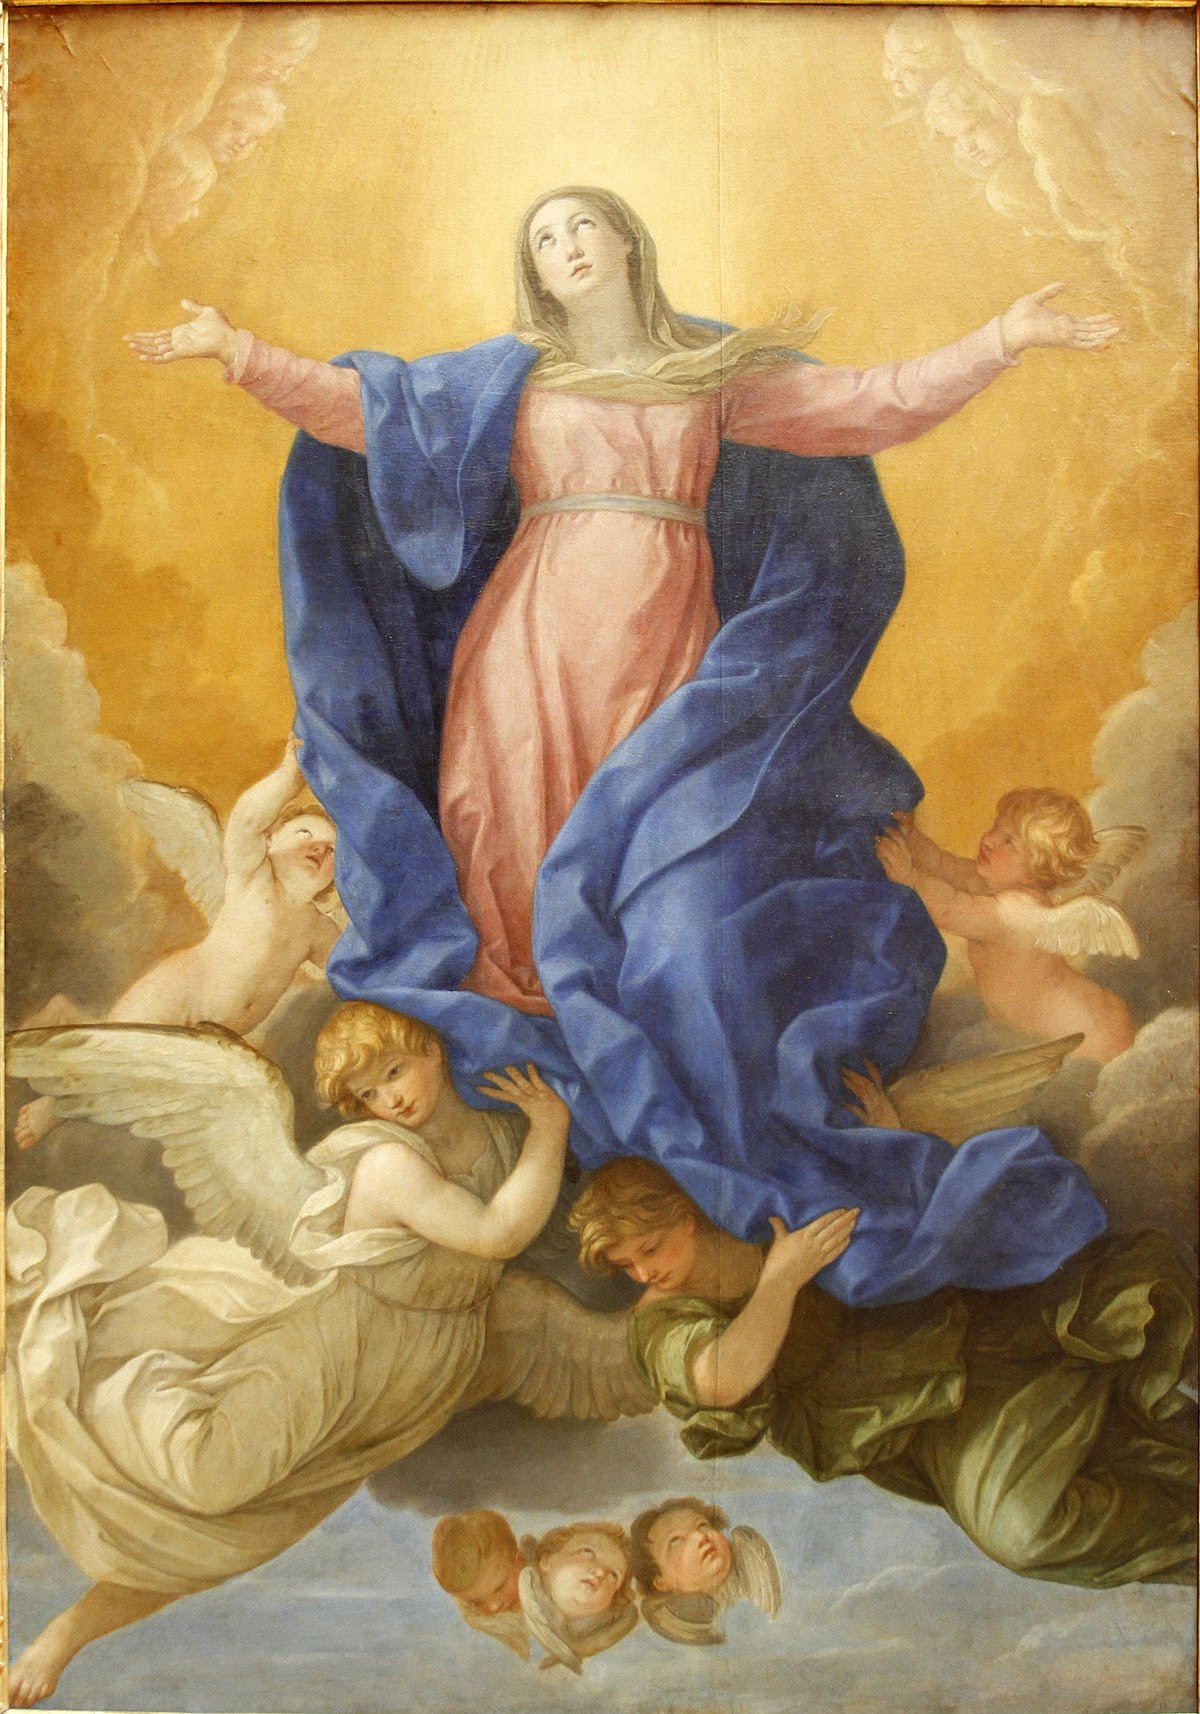 Wniebowzięcie Najświętszej Maryi Panny – Wikipedia, wolna encyklopedia